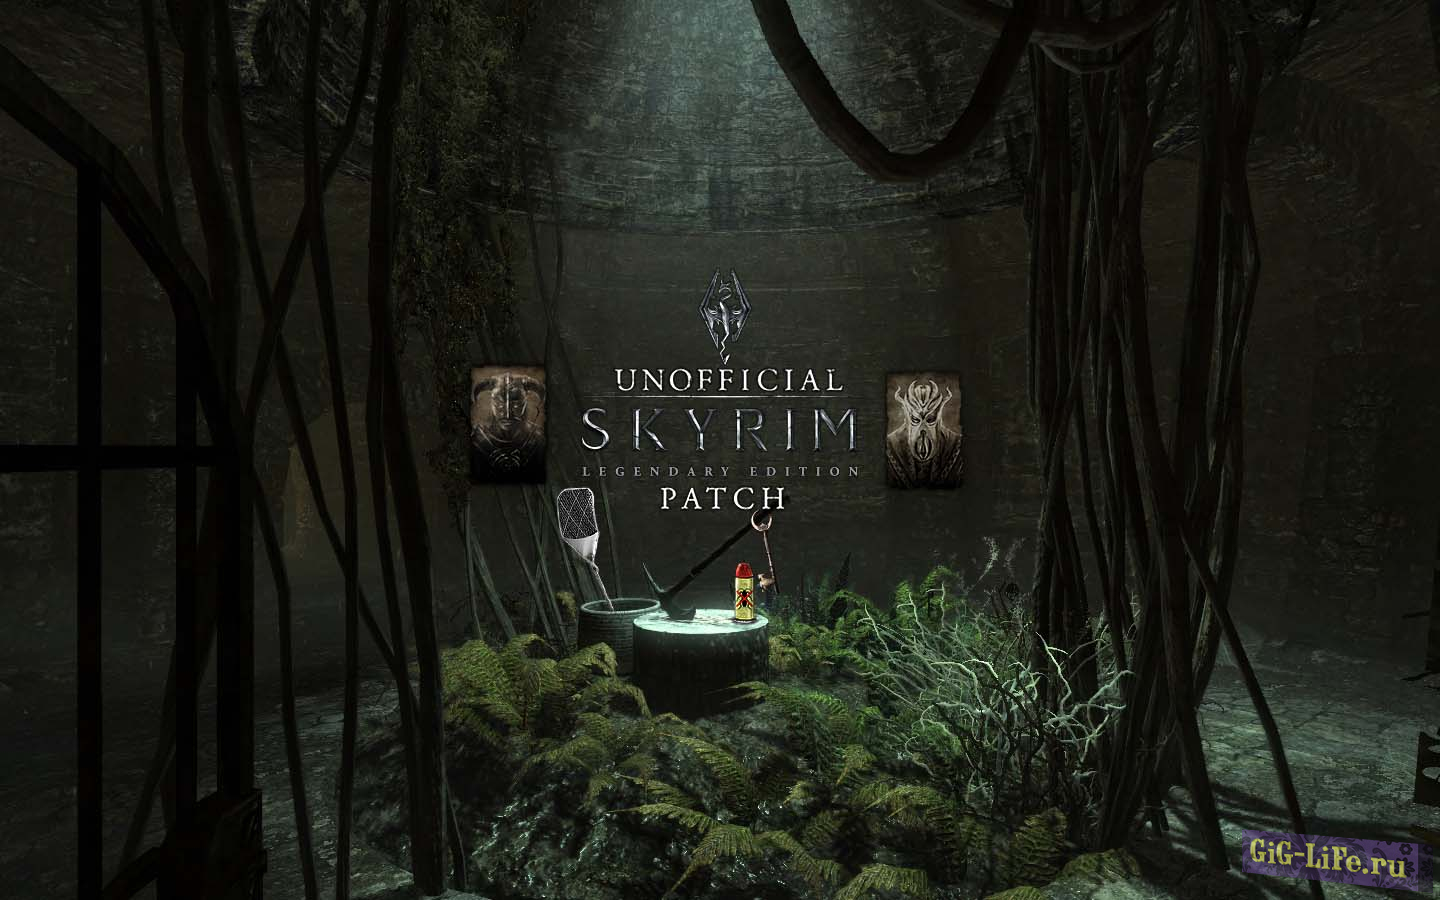 Неофициальный патч Skyrim Legendary Edition / Unofficial Skyrim Legendary Edition Patch